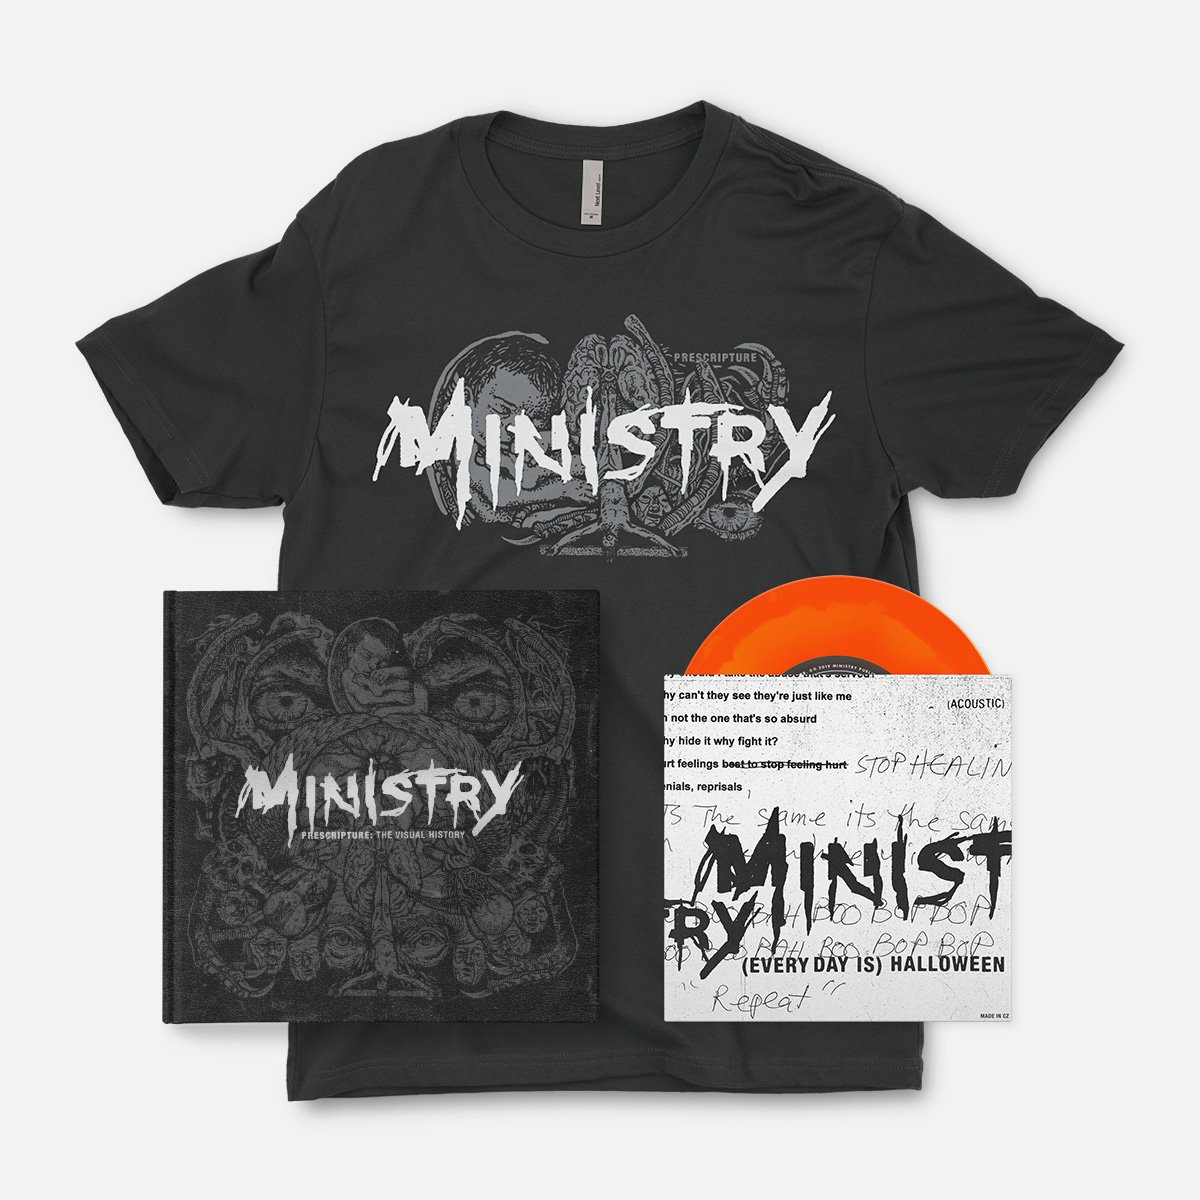 Ministry: Prescripture (Deluxe Edition)